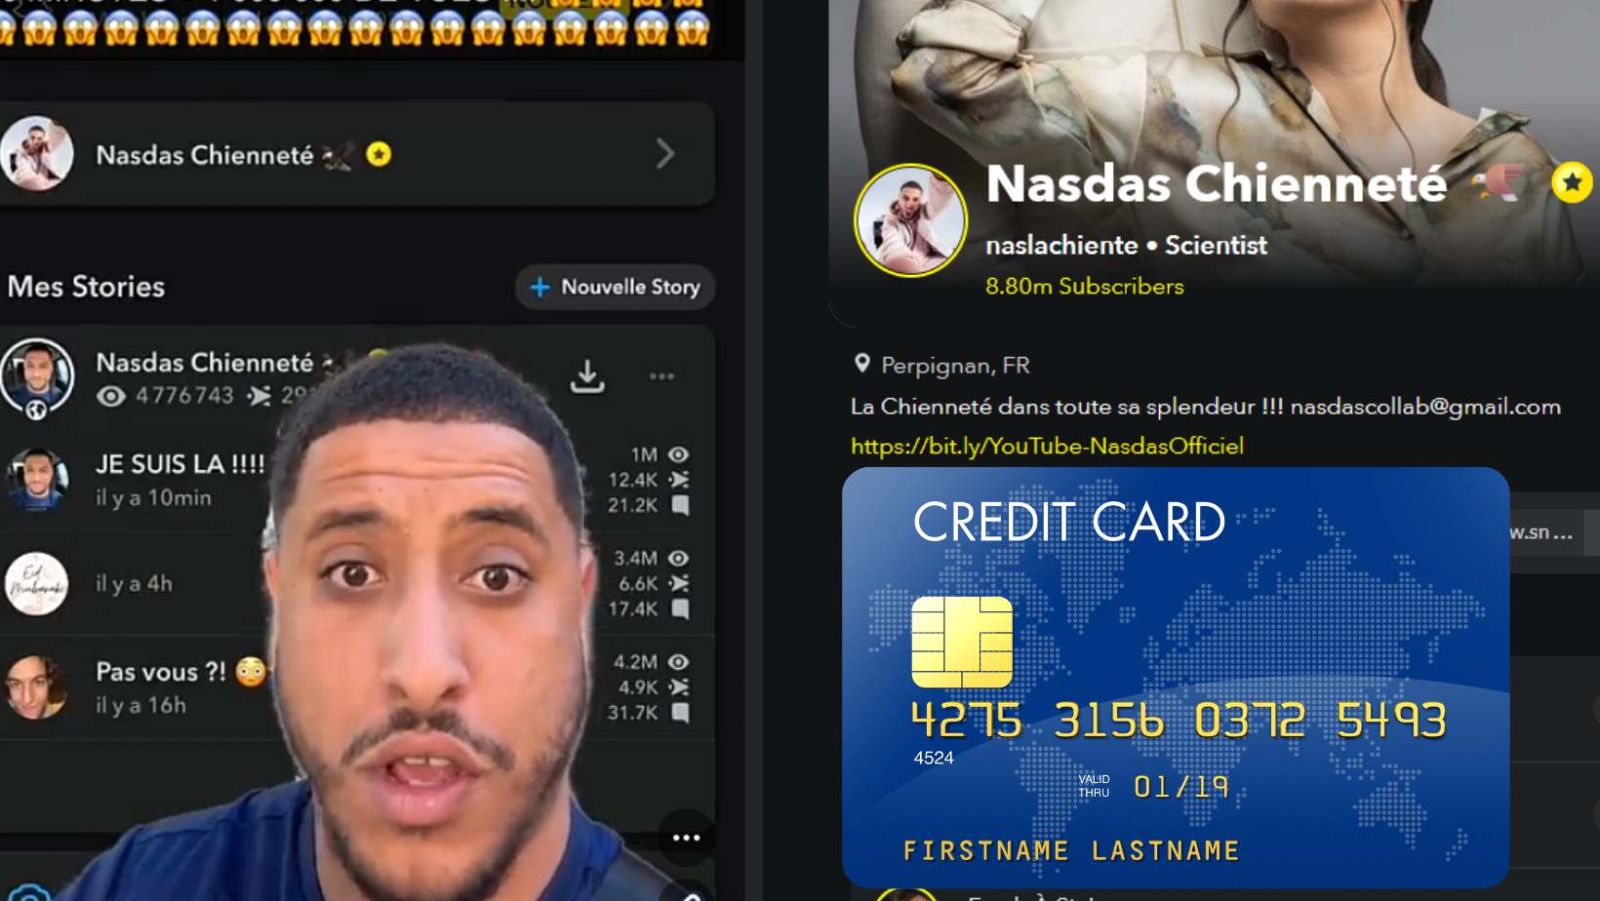 Carte Bancaire Nasdas 100 000 euros, Snapchat en ébullition - Tout savoir sur sa carte bleue